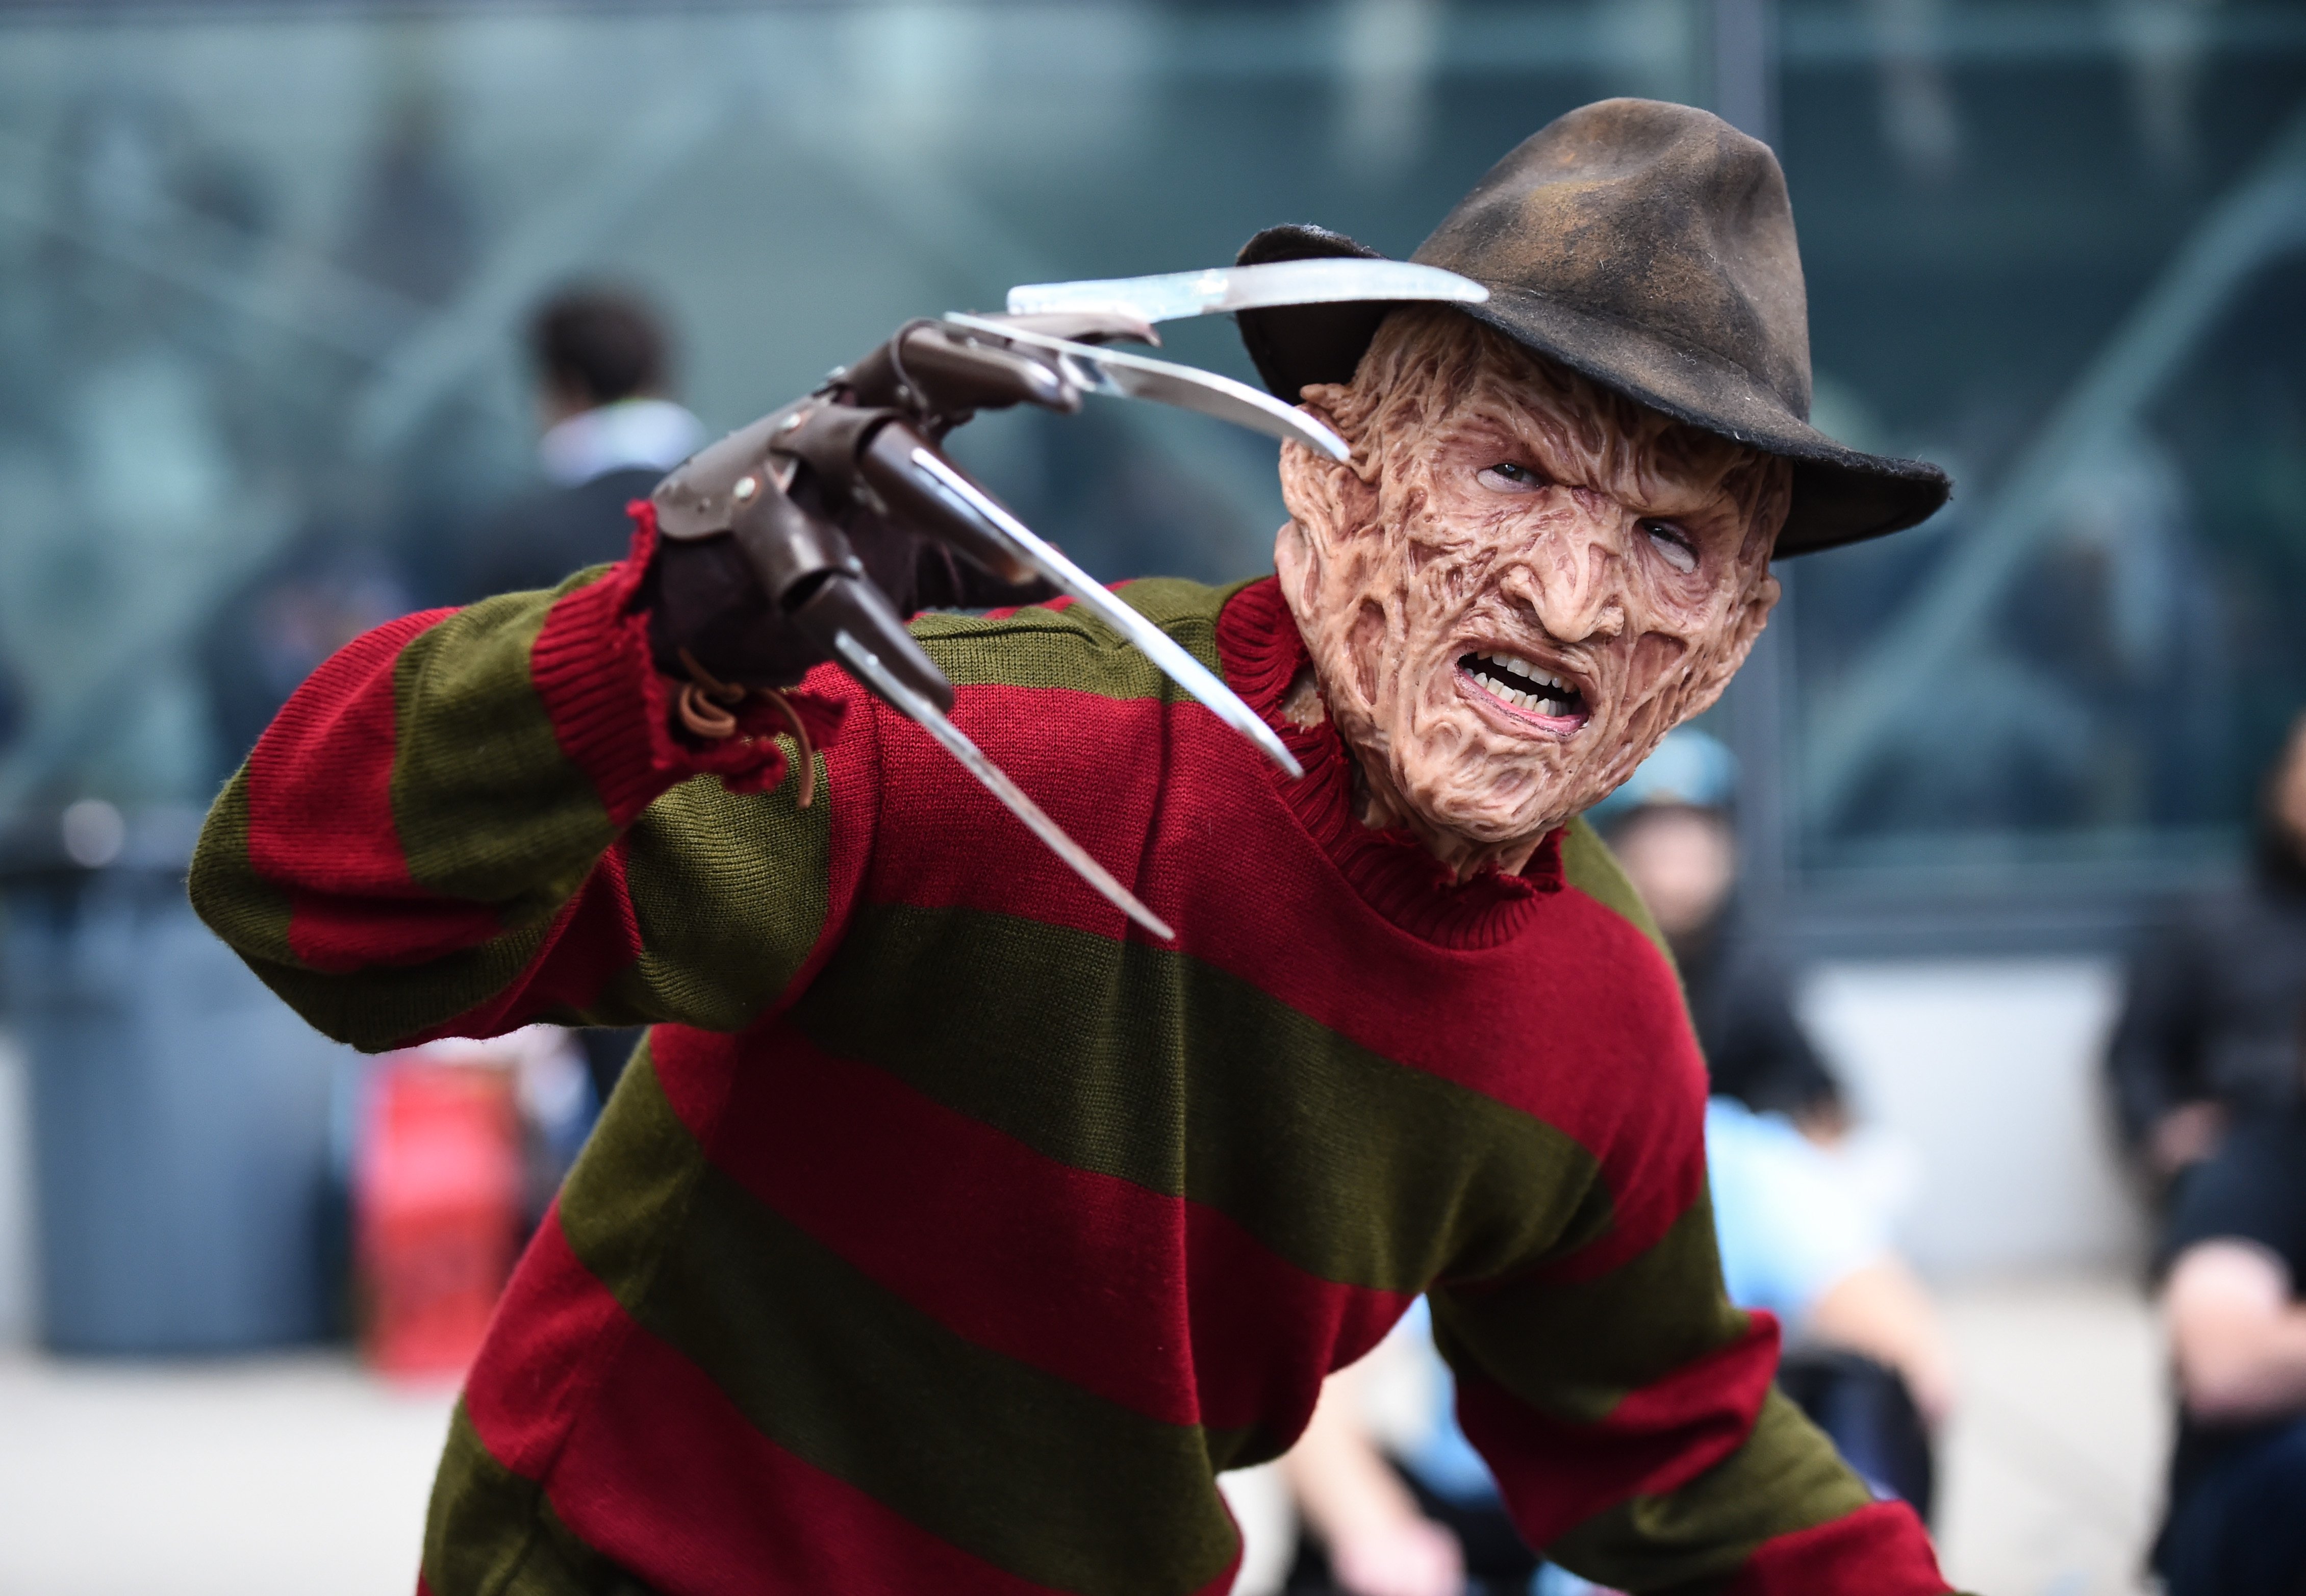 A Freddy Krueger cosplayer